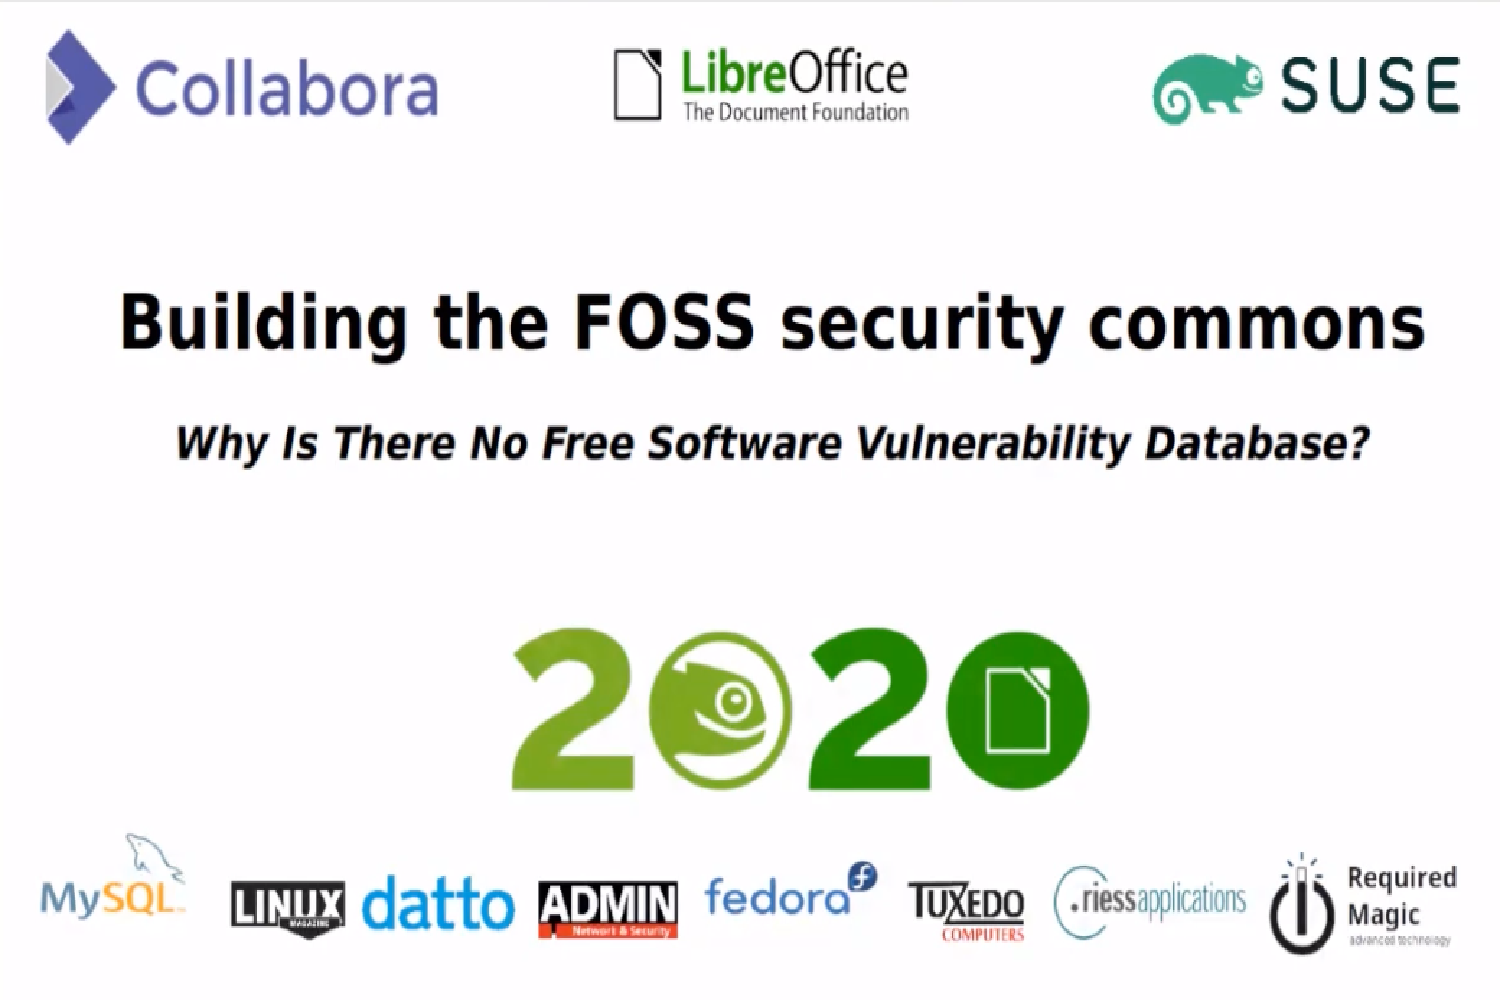 FOSS security